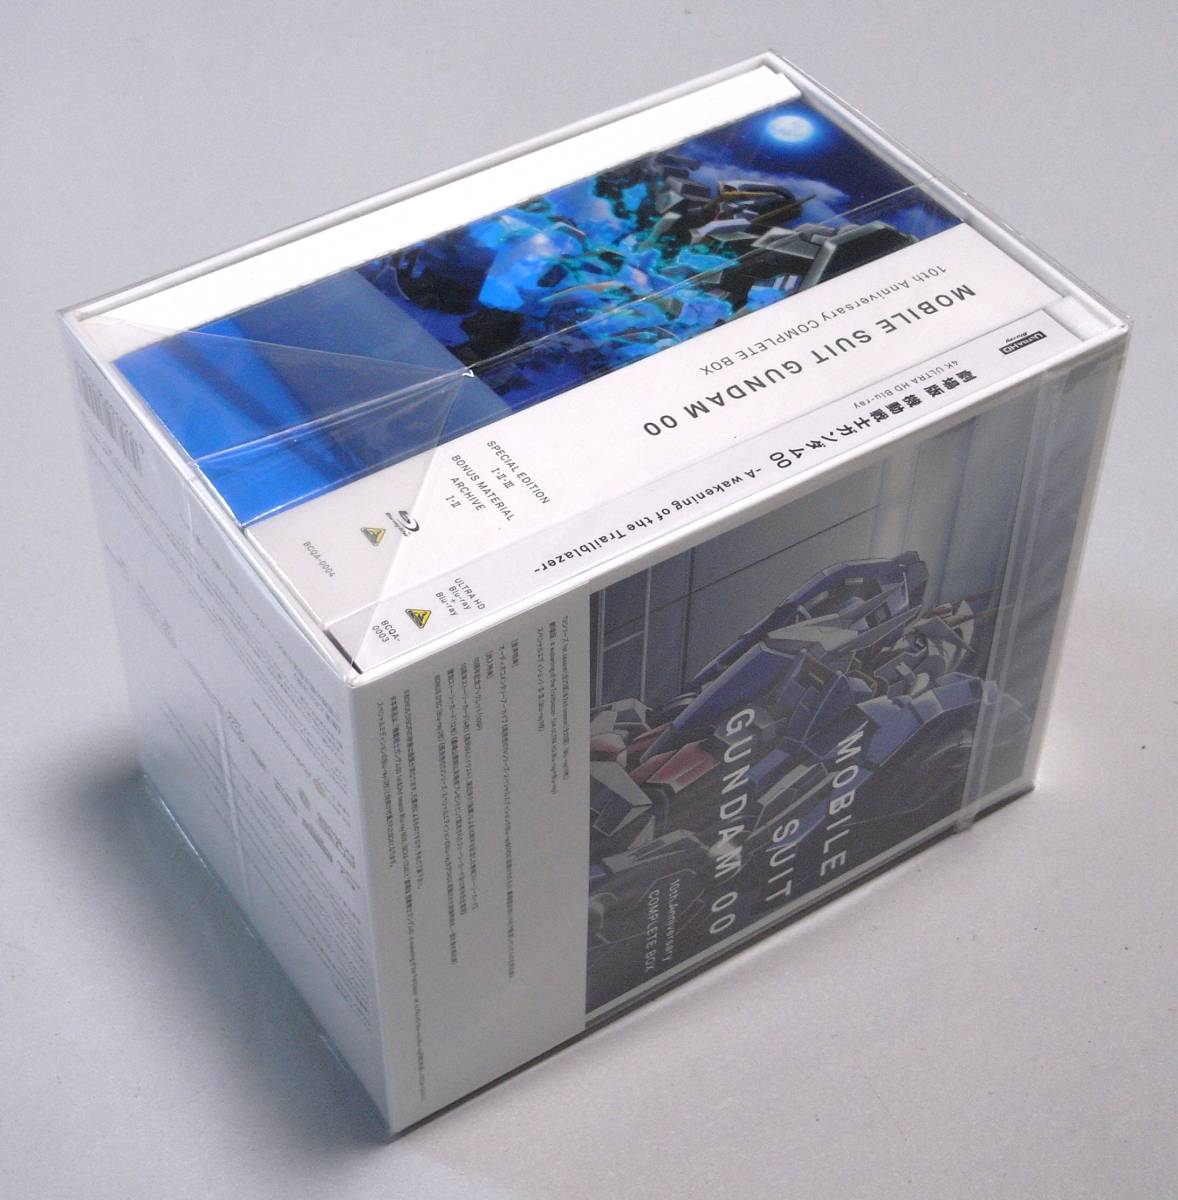 ヤフオク! -機動戦士ガンダム00 10th anniversary complete boxの中古 